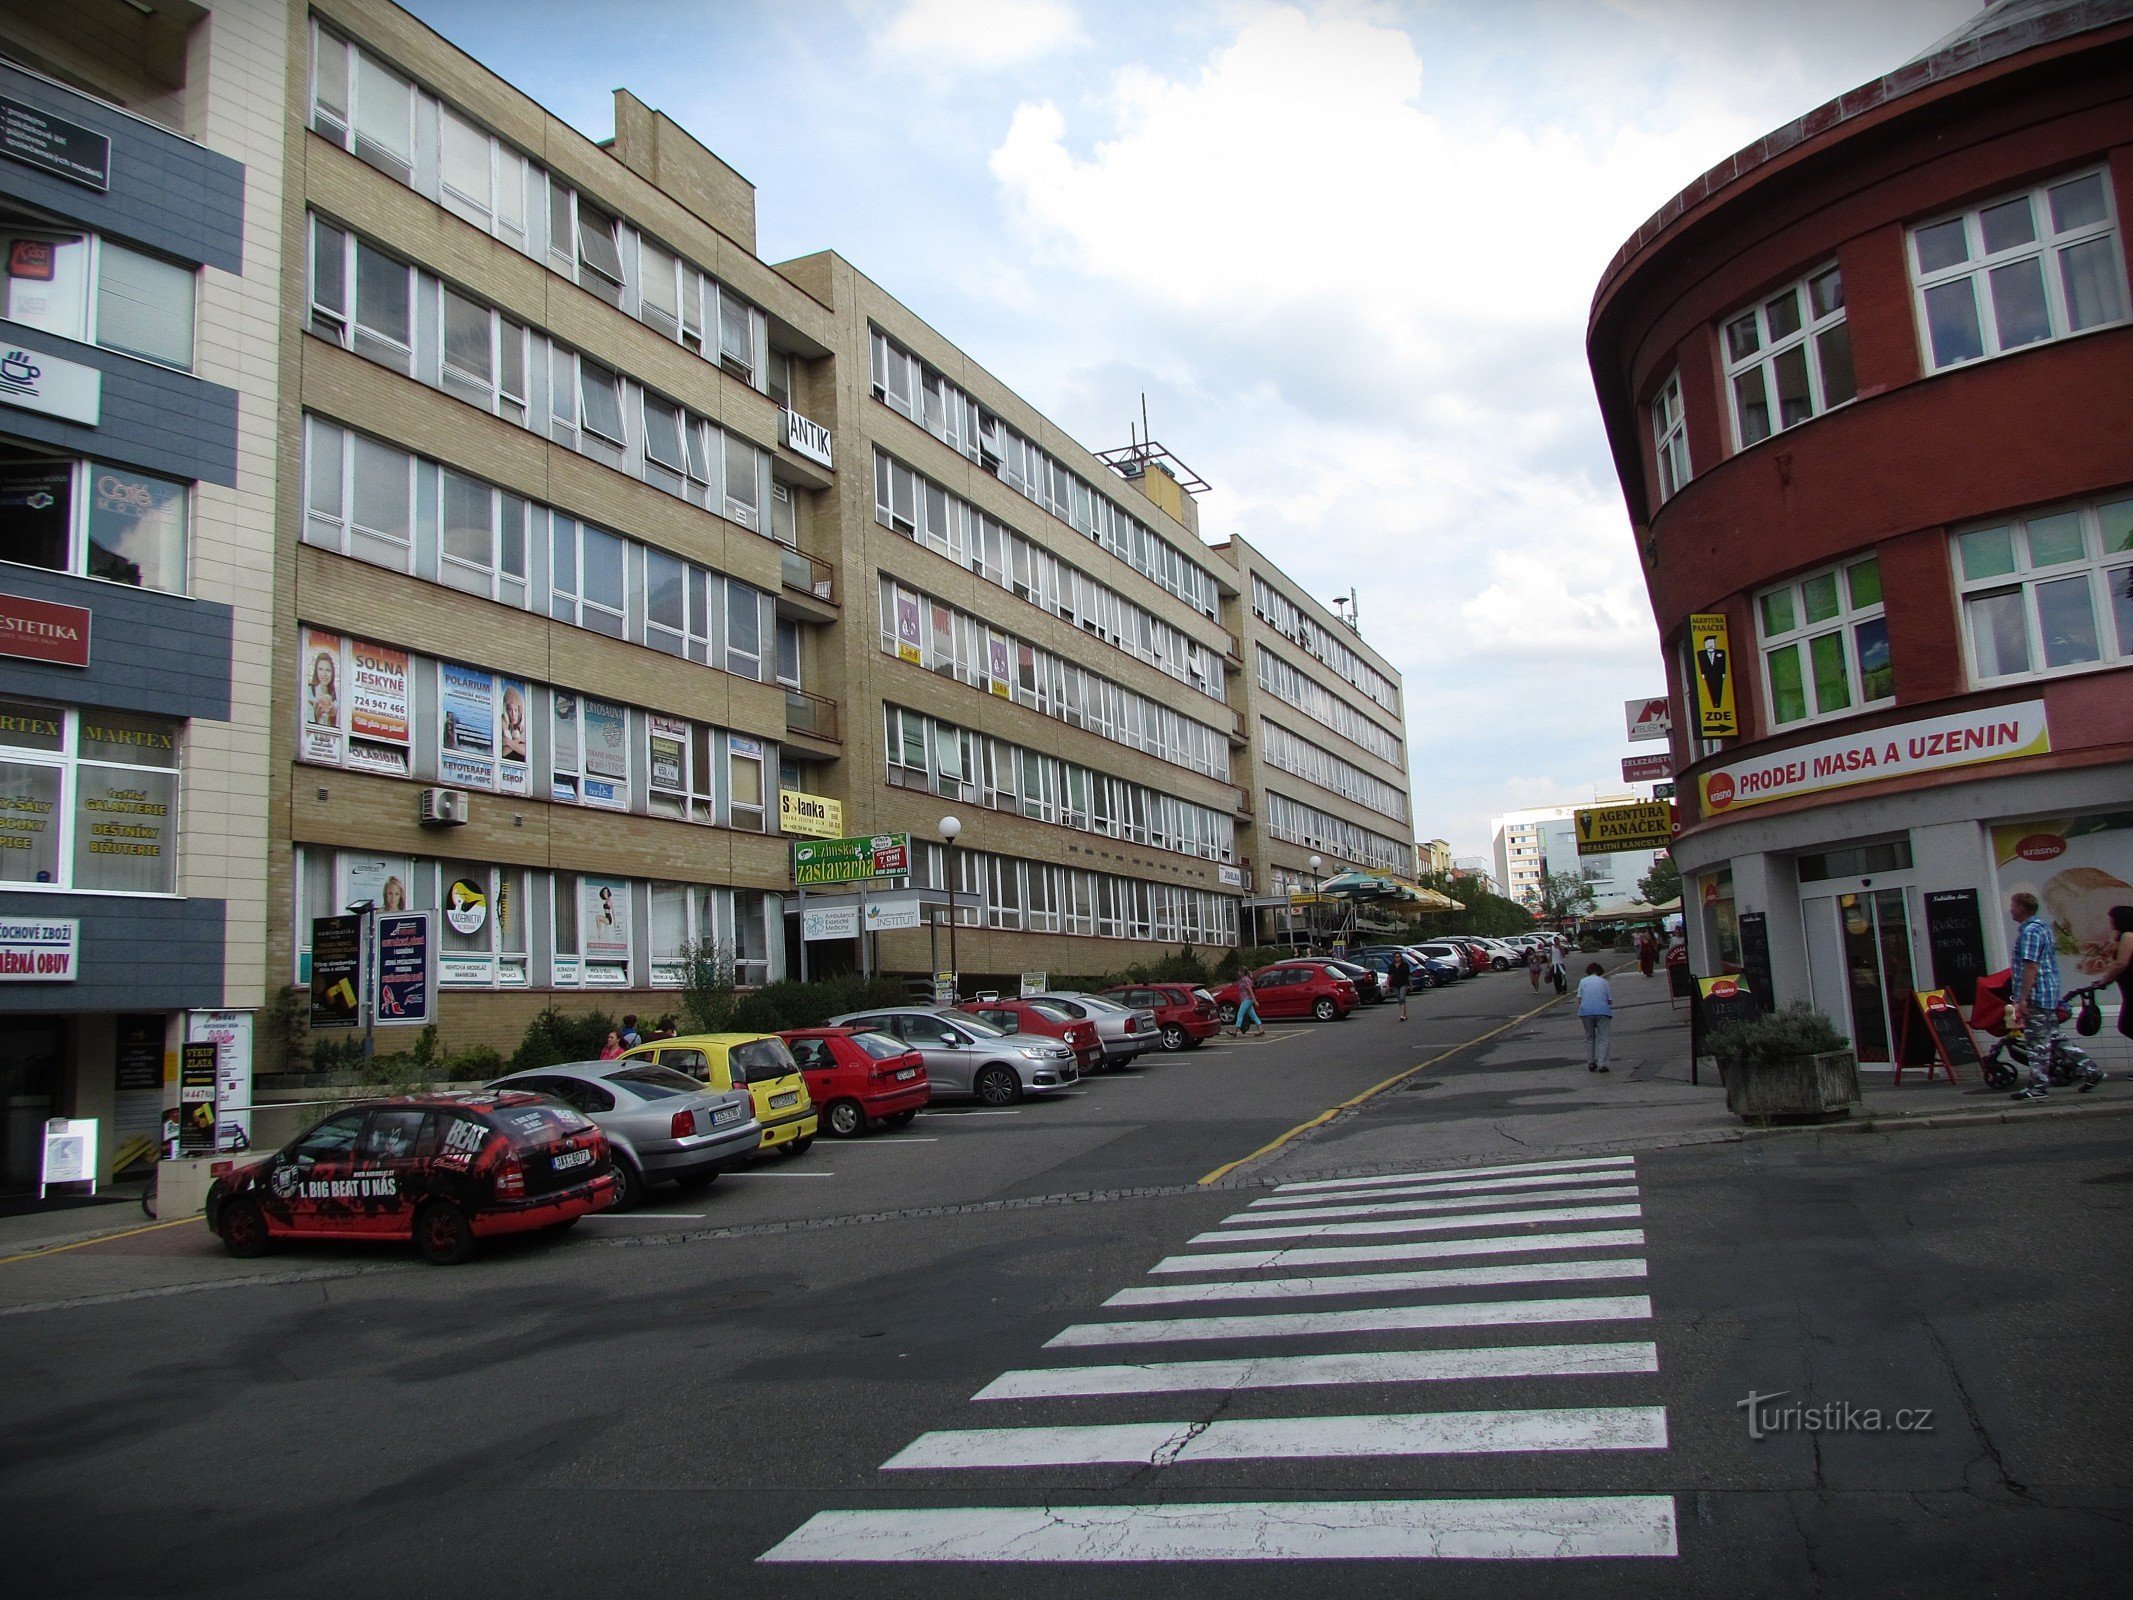 兹林 - Bartošova 街